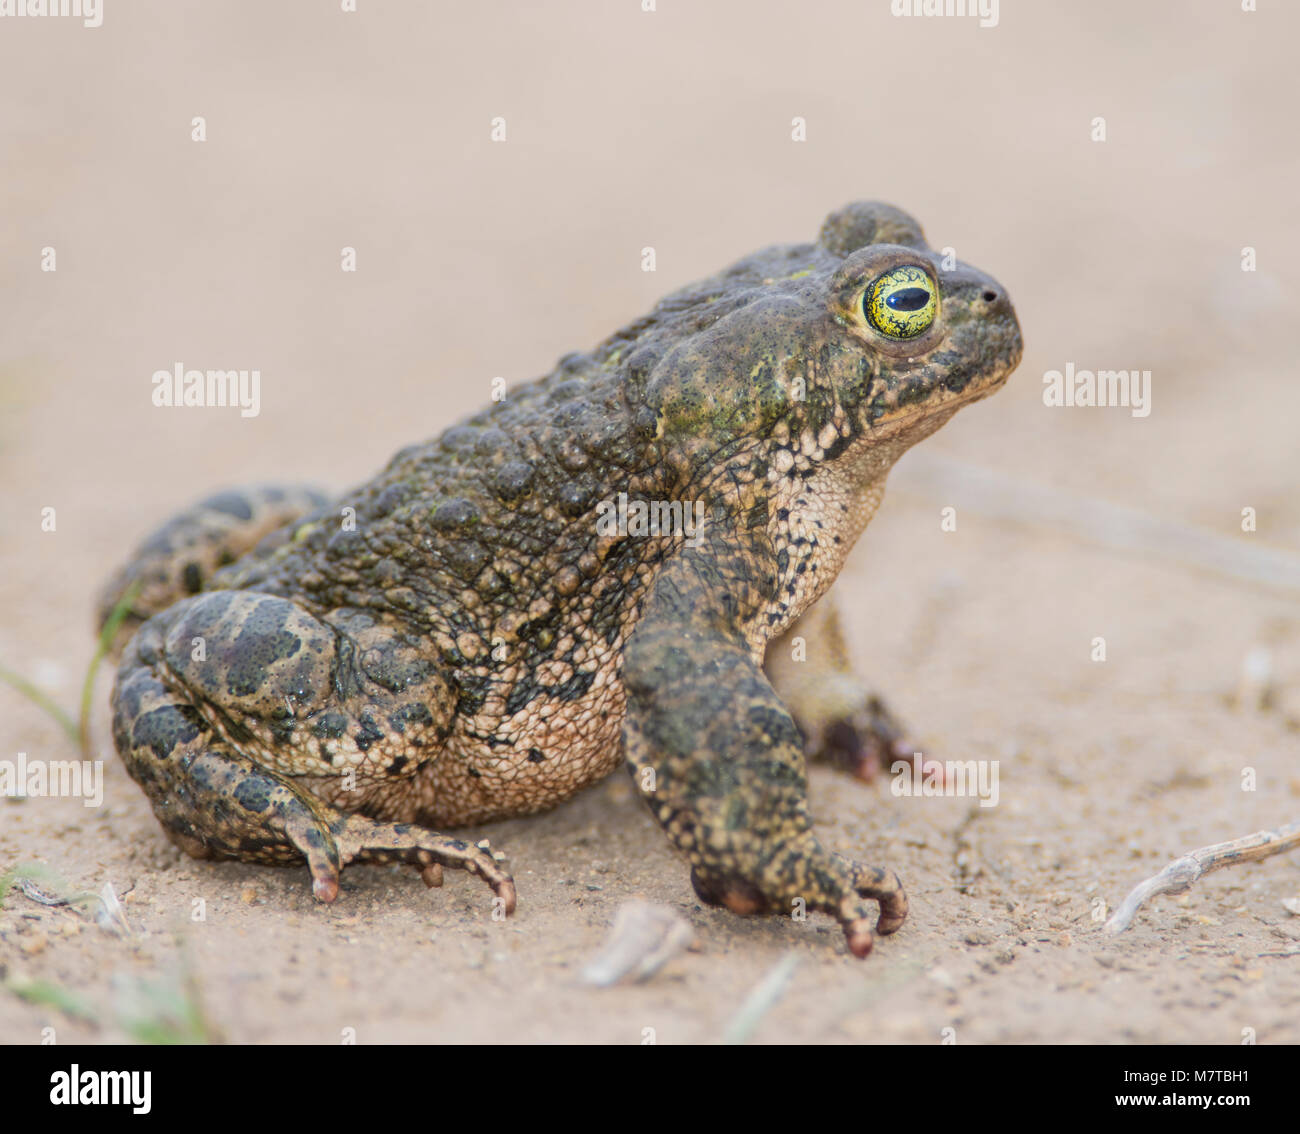 Natterjack Toad (Epidalea calamita) sabbia sul suolo sabbioso nel nord della Spagna. Foto Stock